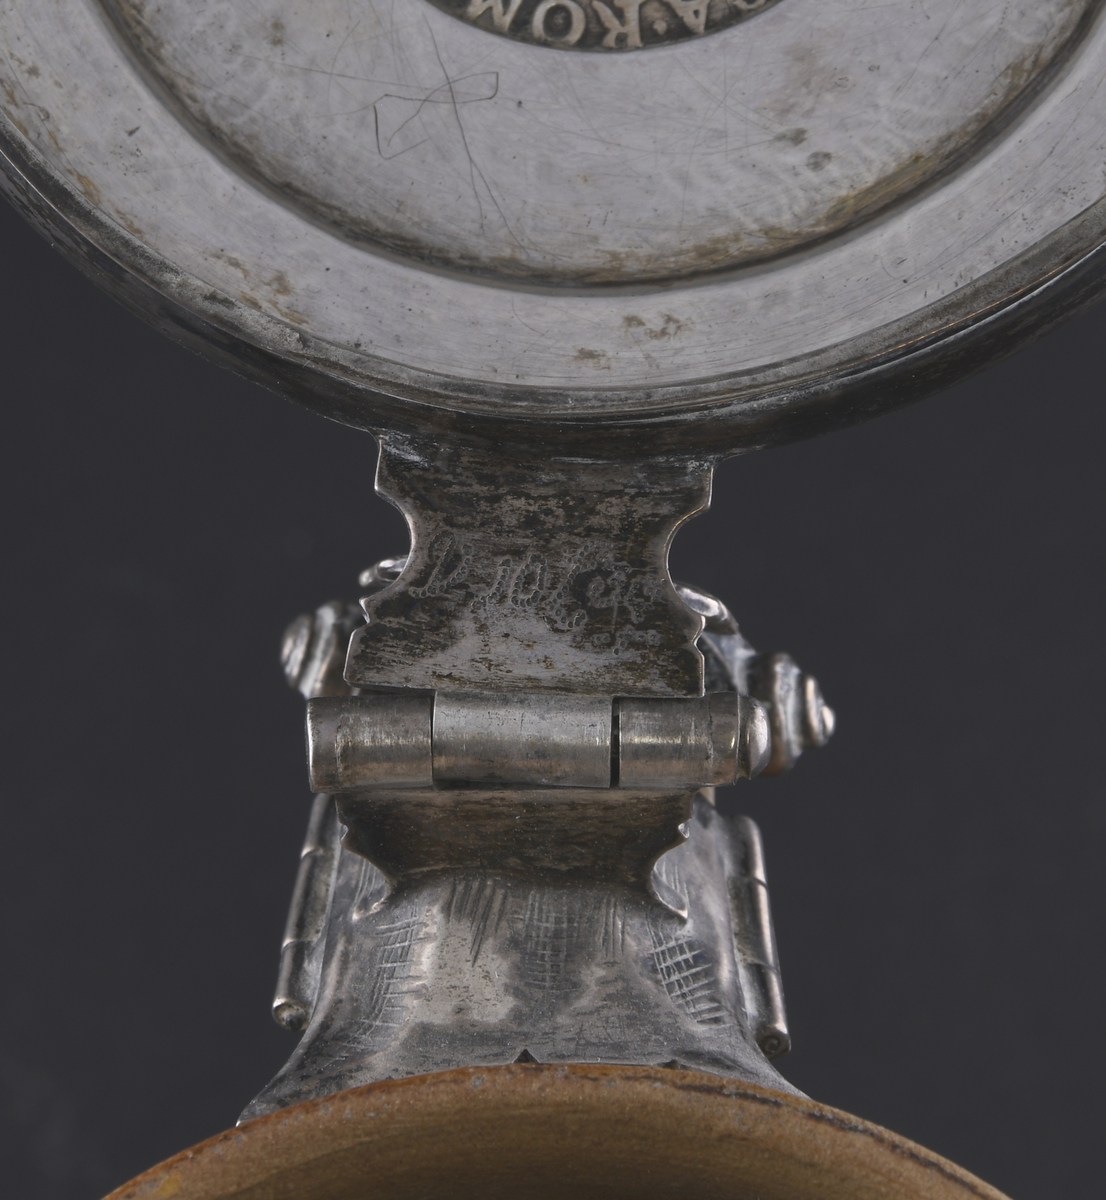 Krus av keramikk, med lokk av sølv. Kruset er farget oransje, hvorpå nederste del av korpus og håndtak er mørkere farget. Øverst og nederst på kruset er det dekorative riller. Hankfeste av sølv, med stående palmett. Lokk av sølv, med en tysk sølvdaler fra perioden 1620-1638.